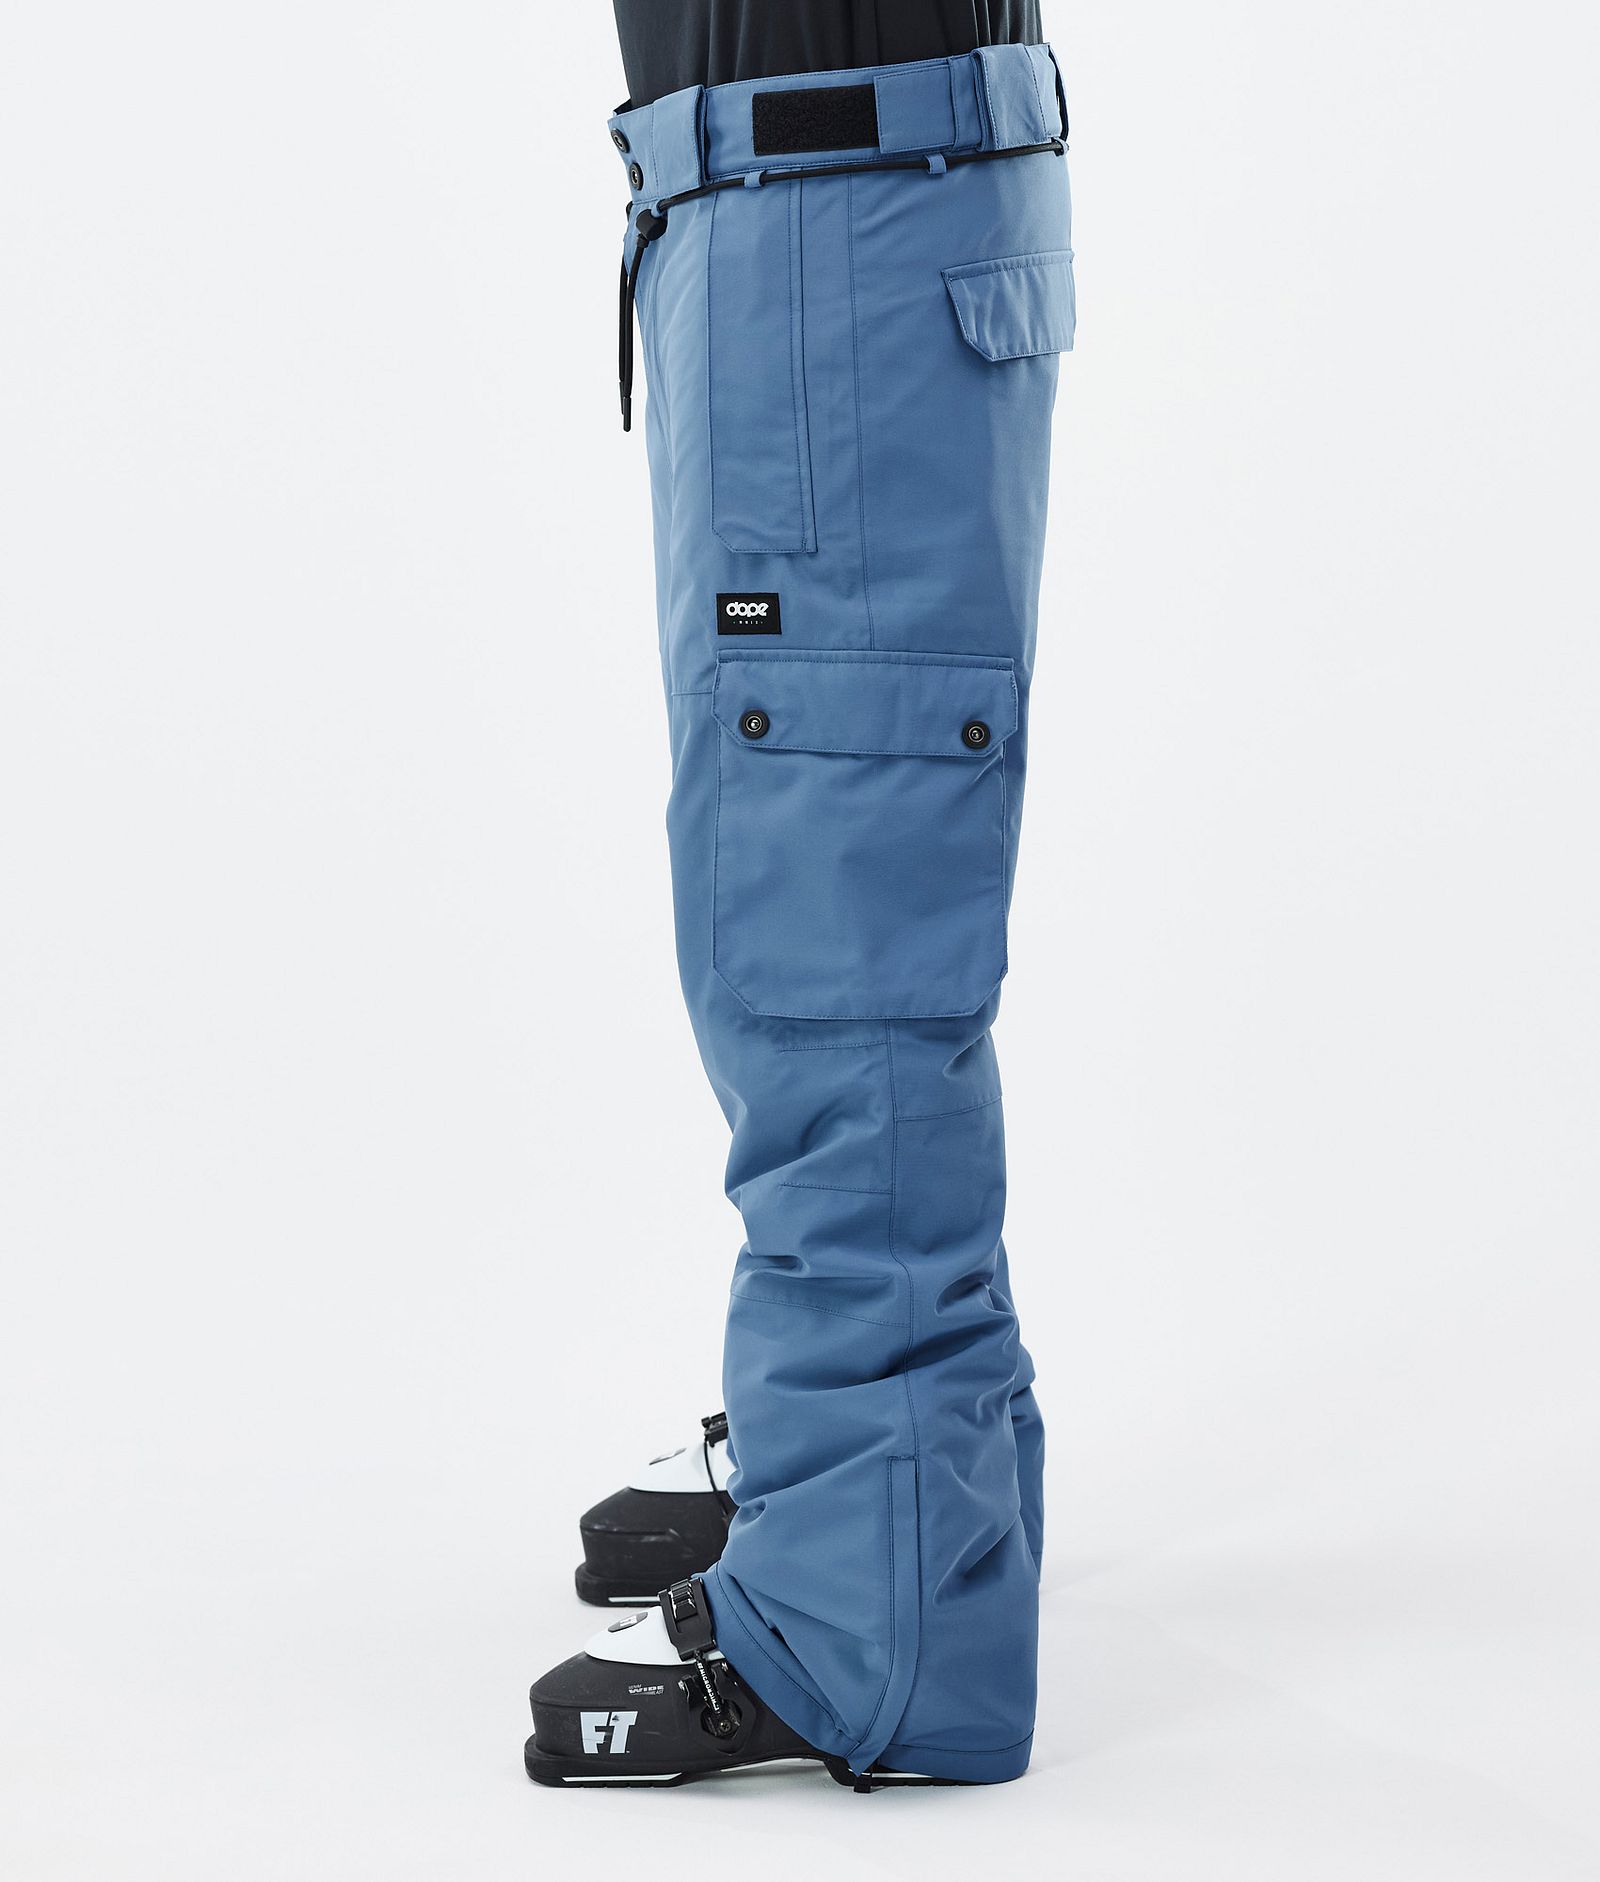 Iconic スキーパンツ メンズ Blue Steel